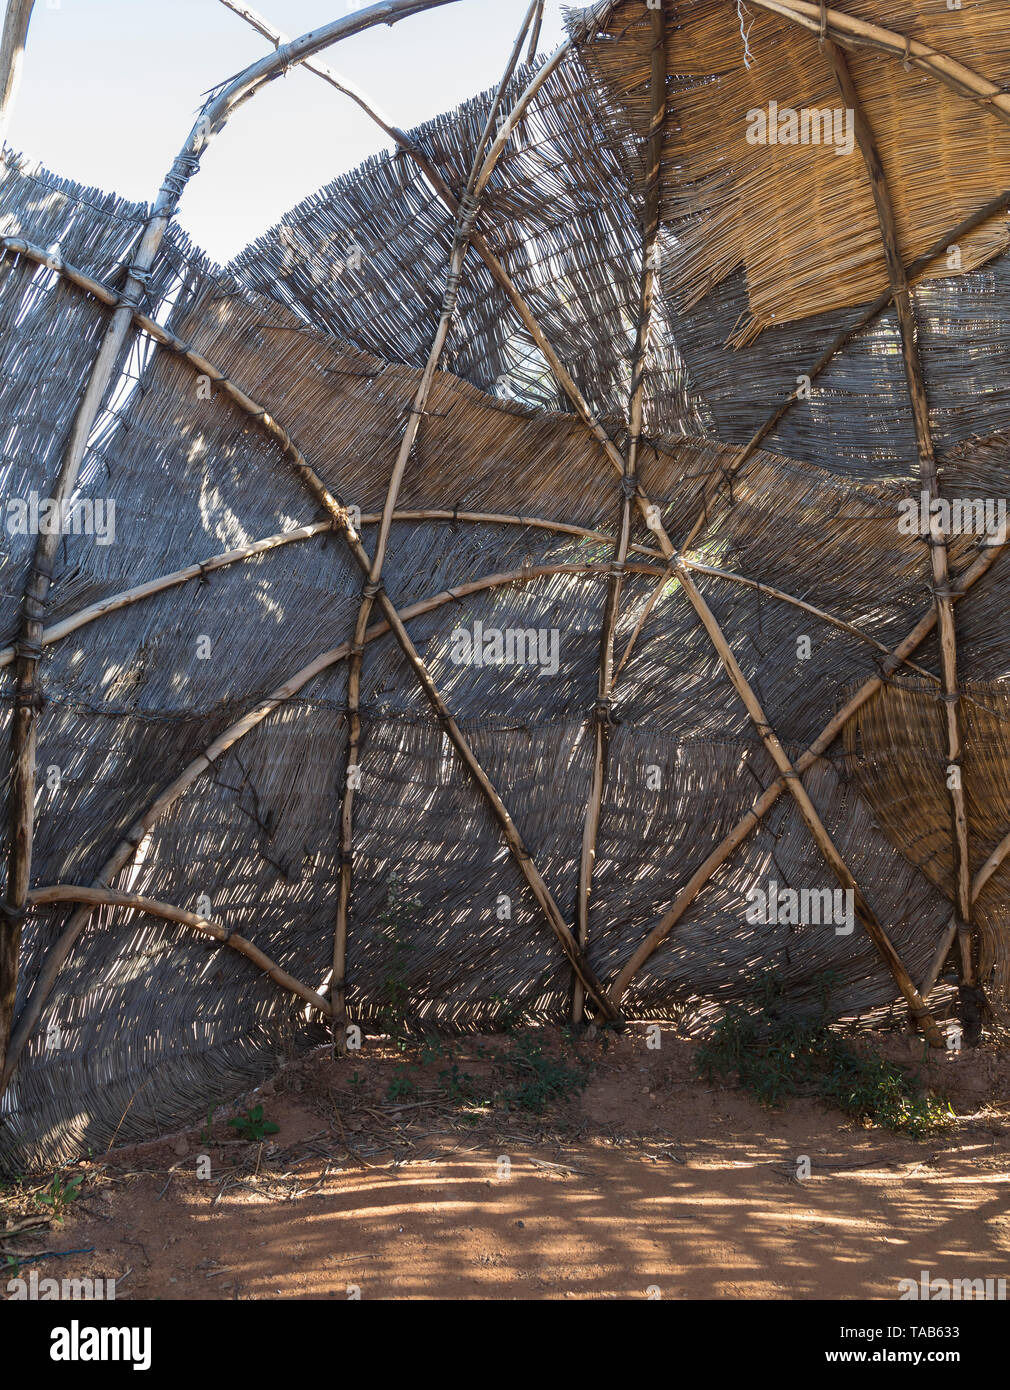 Allestimento interno di un Nama Kookskerm, un Khoishan reed hut per la cottura e socializzazione Foto Stock